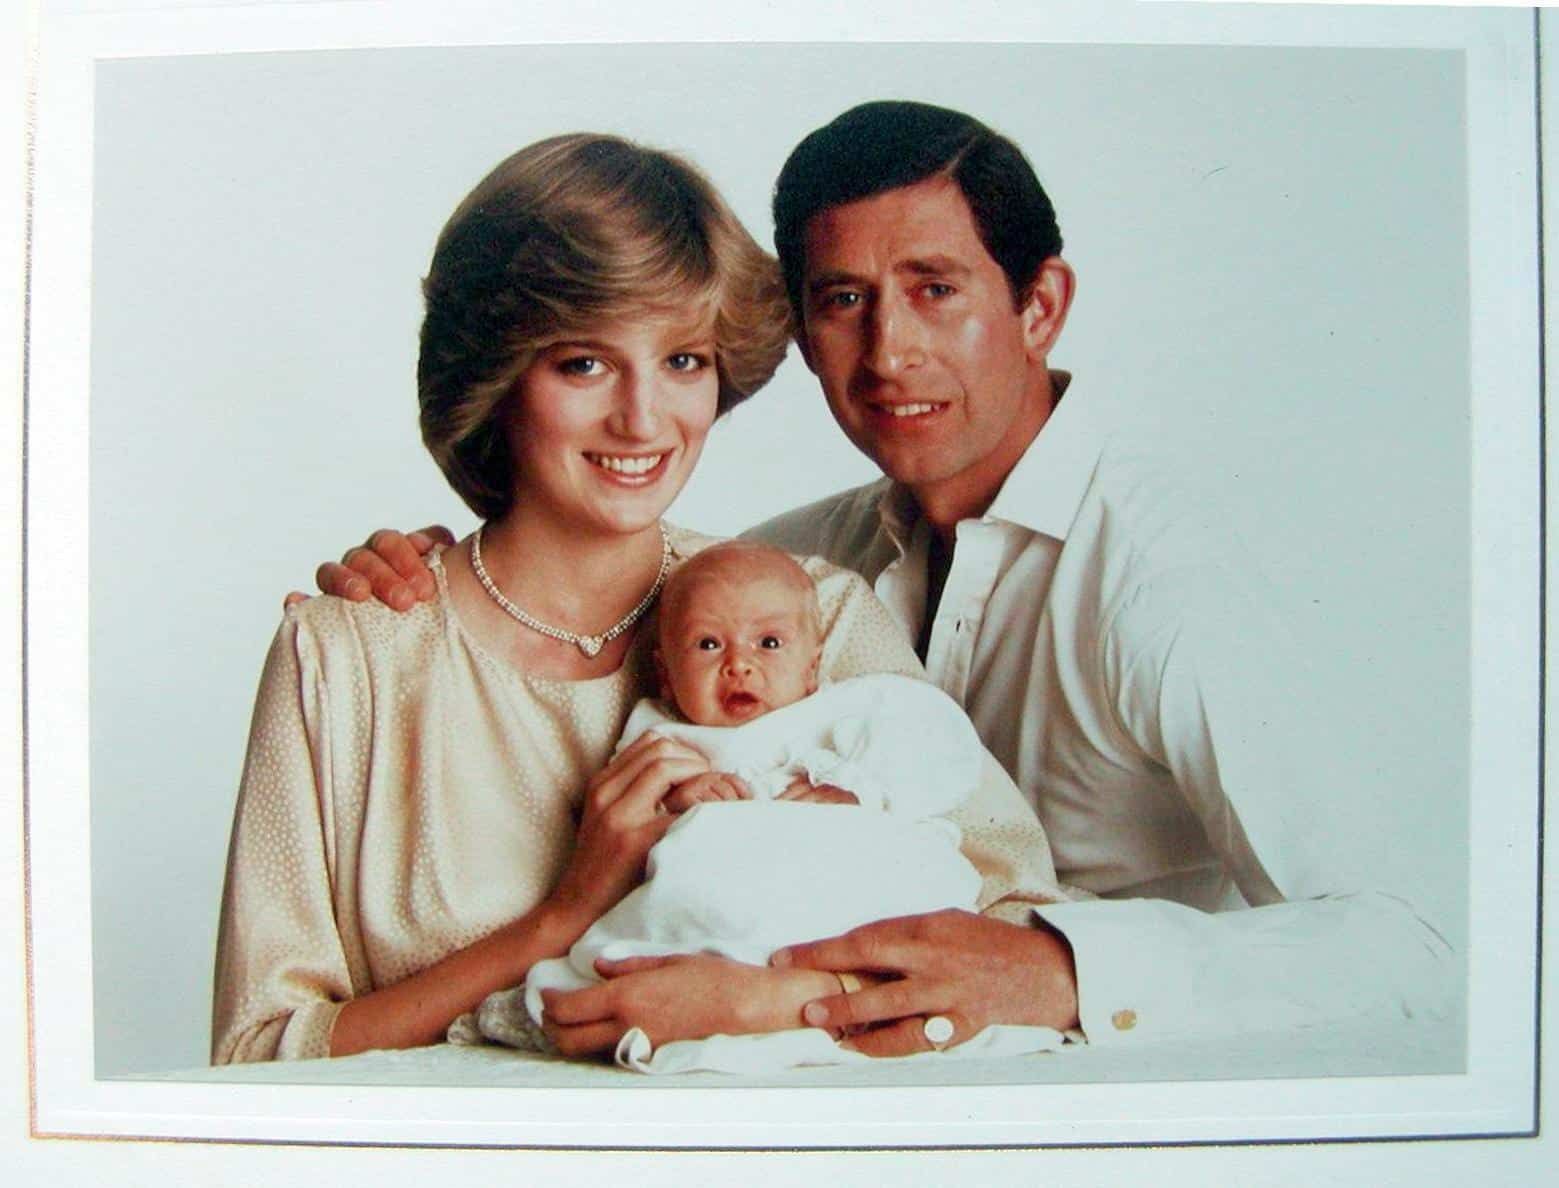 Die Weihnachtskarte von Diana und Charles 1982 zeigt ein Familienbild mit ihrem ersten Sohn William